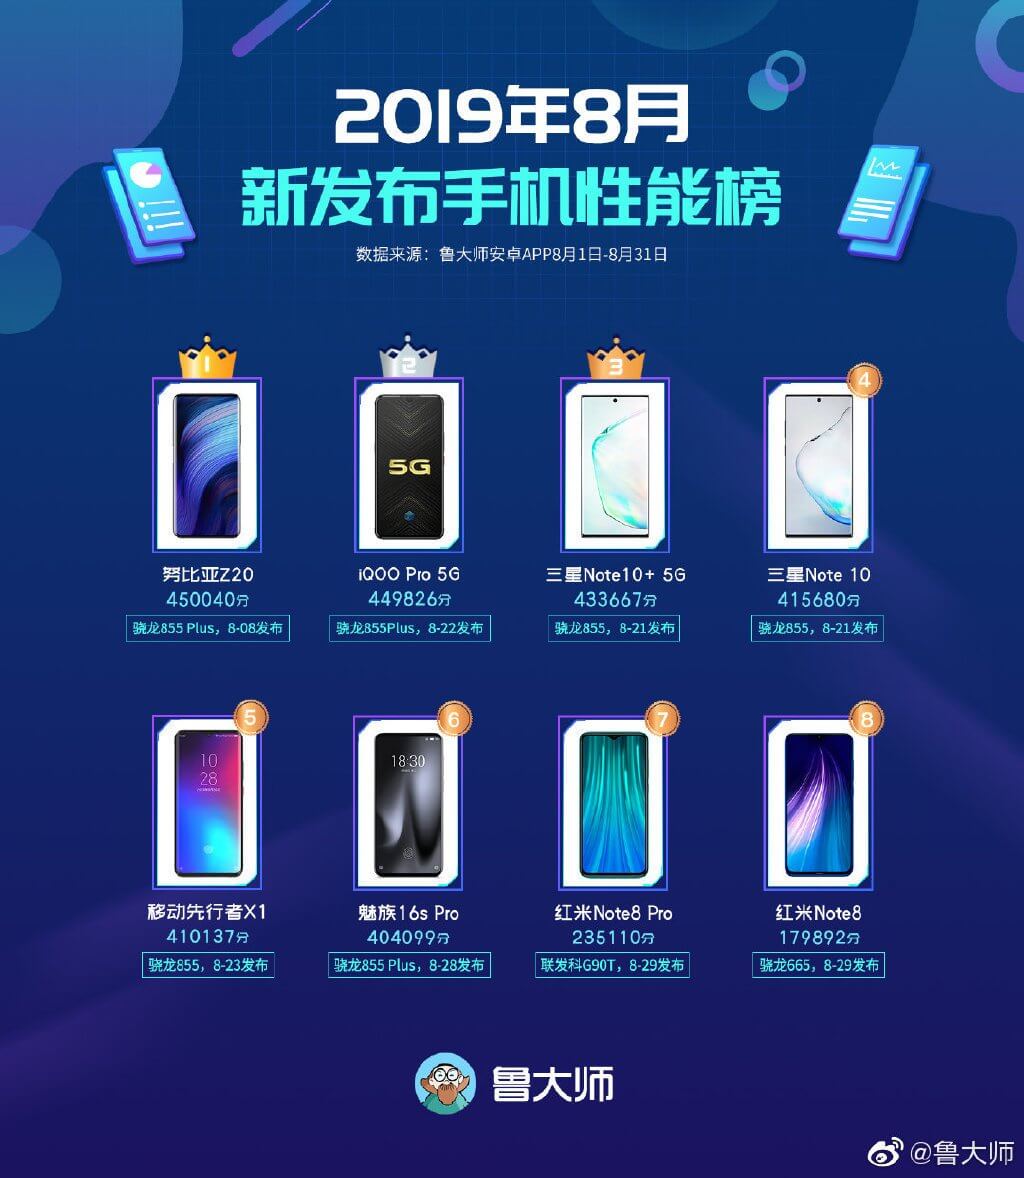 ТОП 8 лучших смартфонов за август 2019 года по версии Master Lu